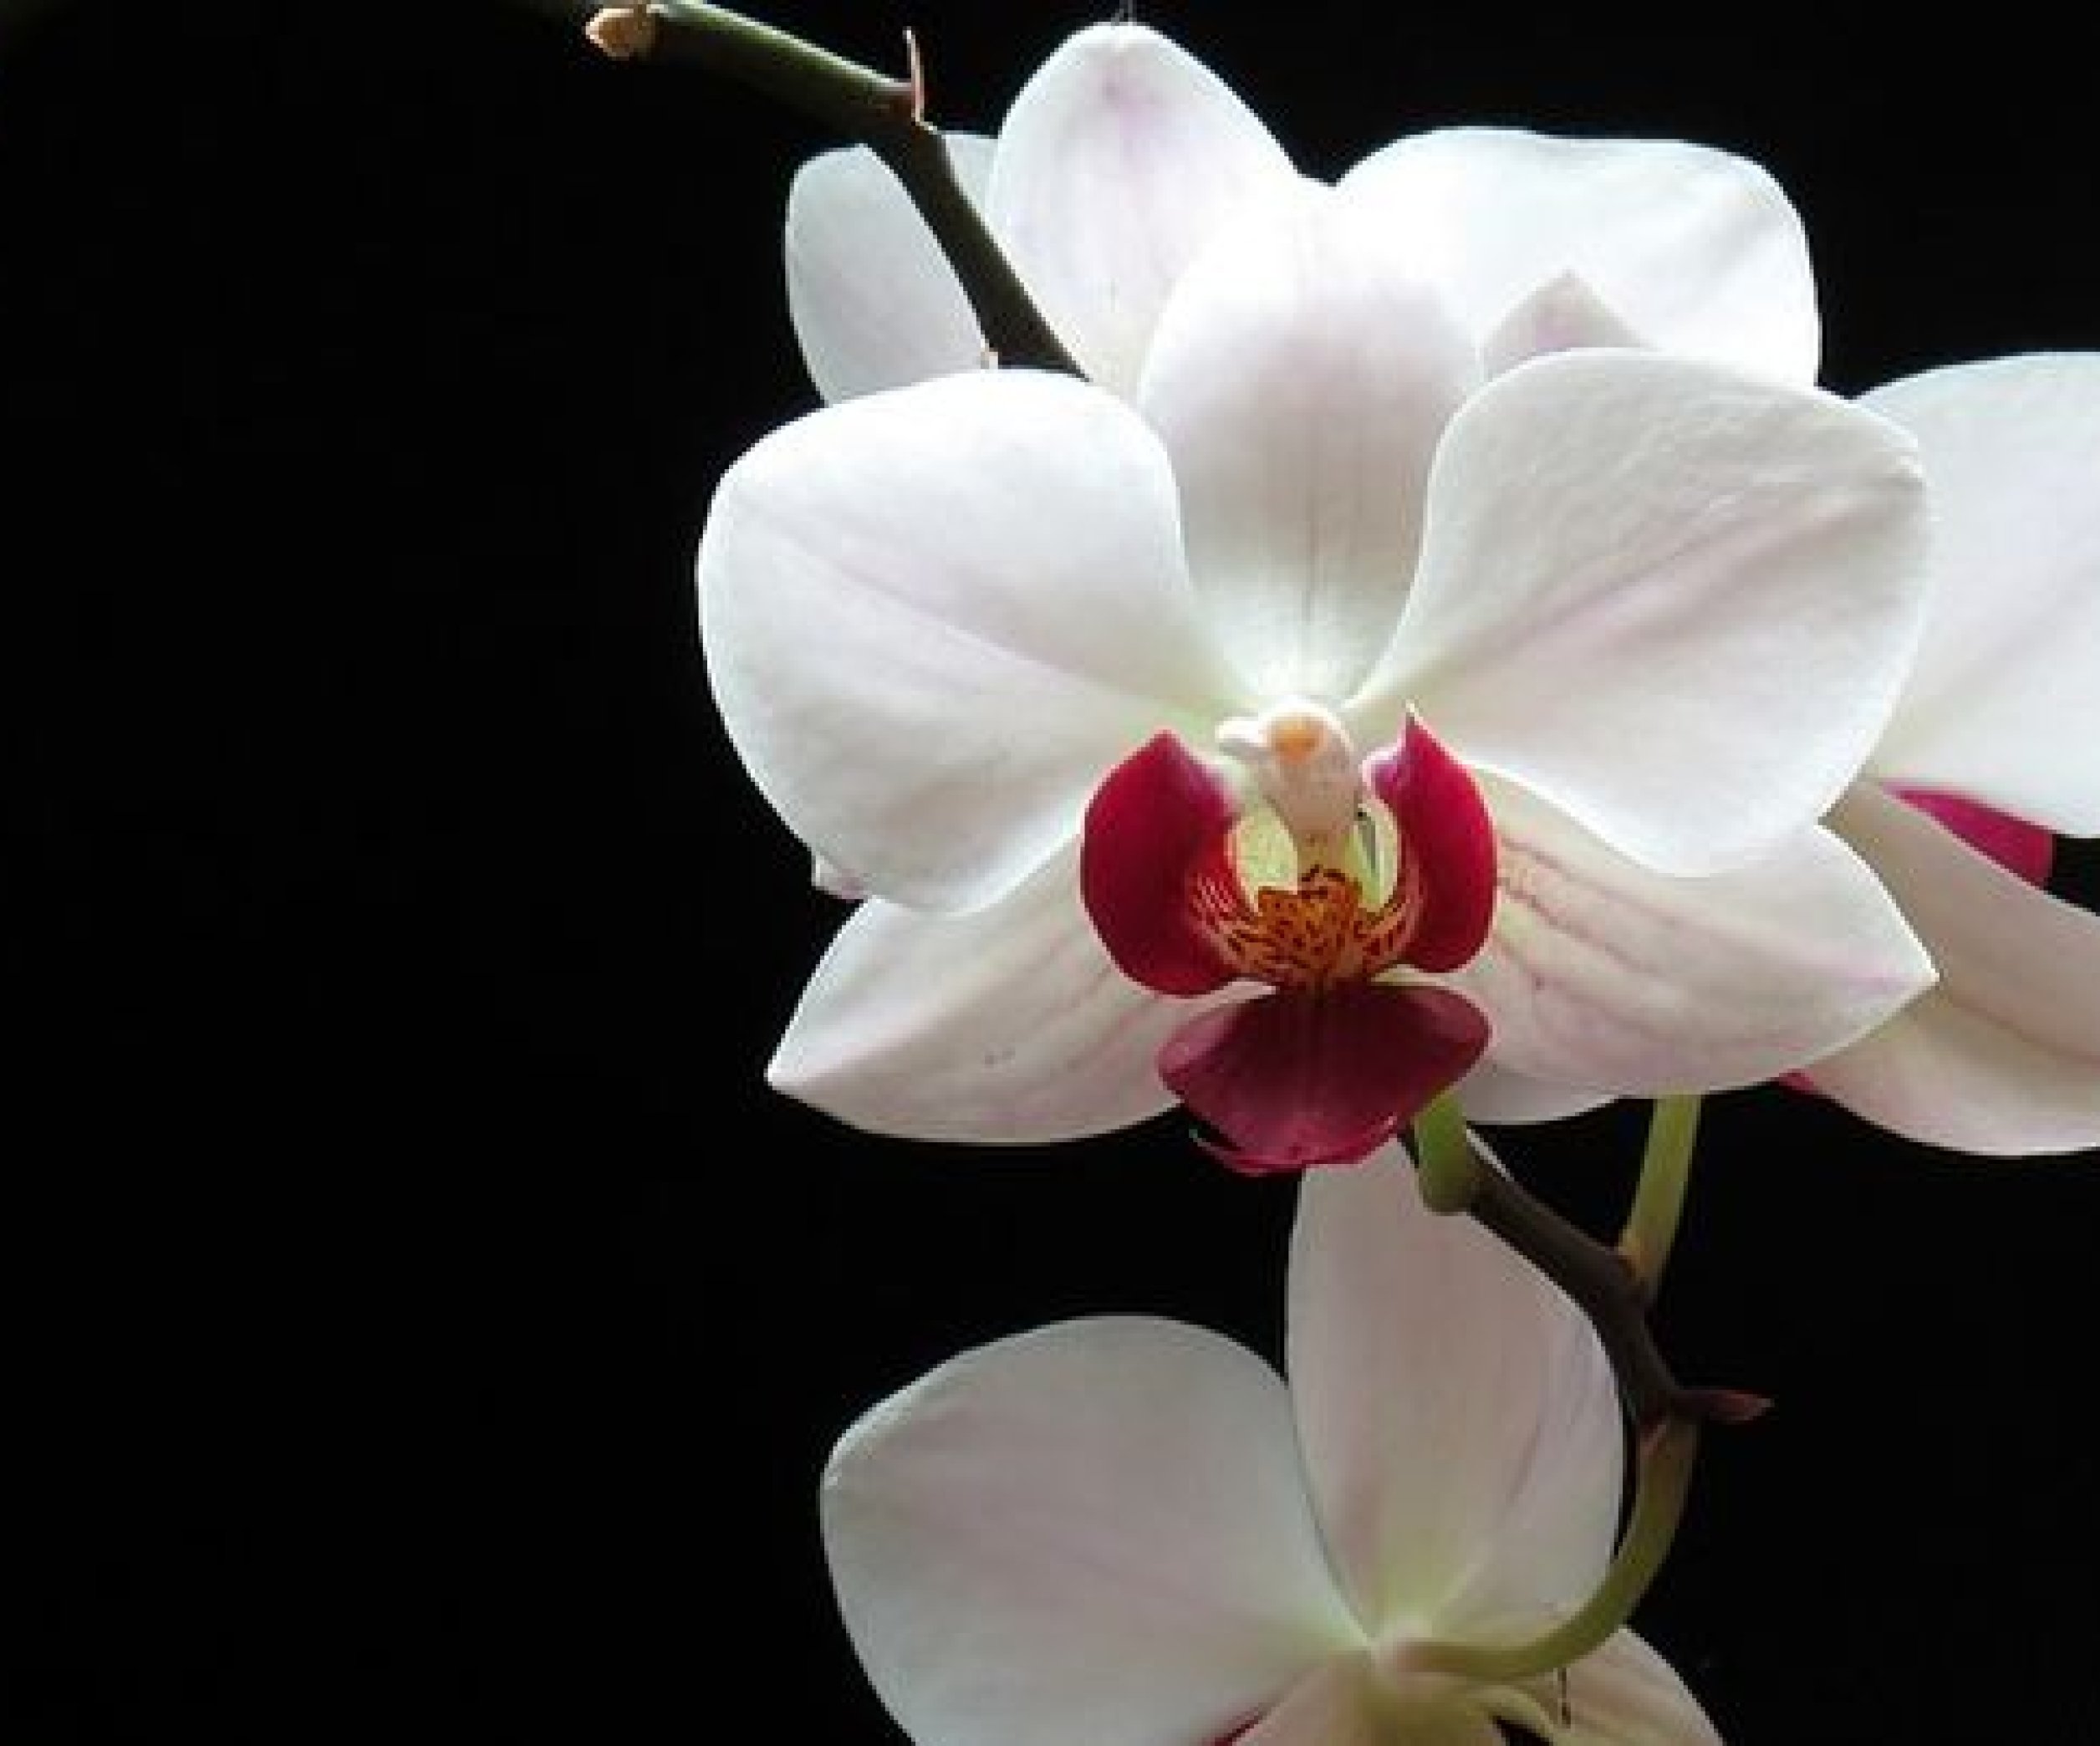 Цветки и бутоны орхидеи